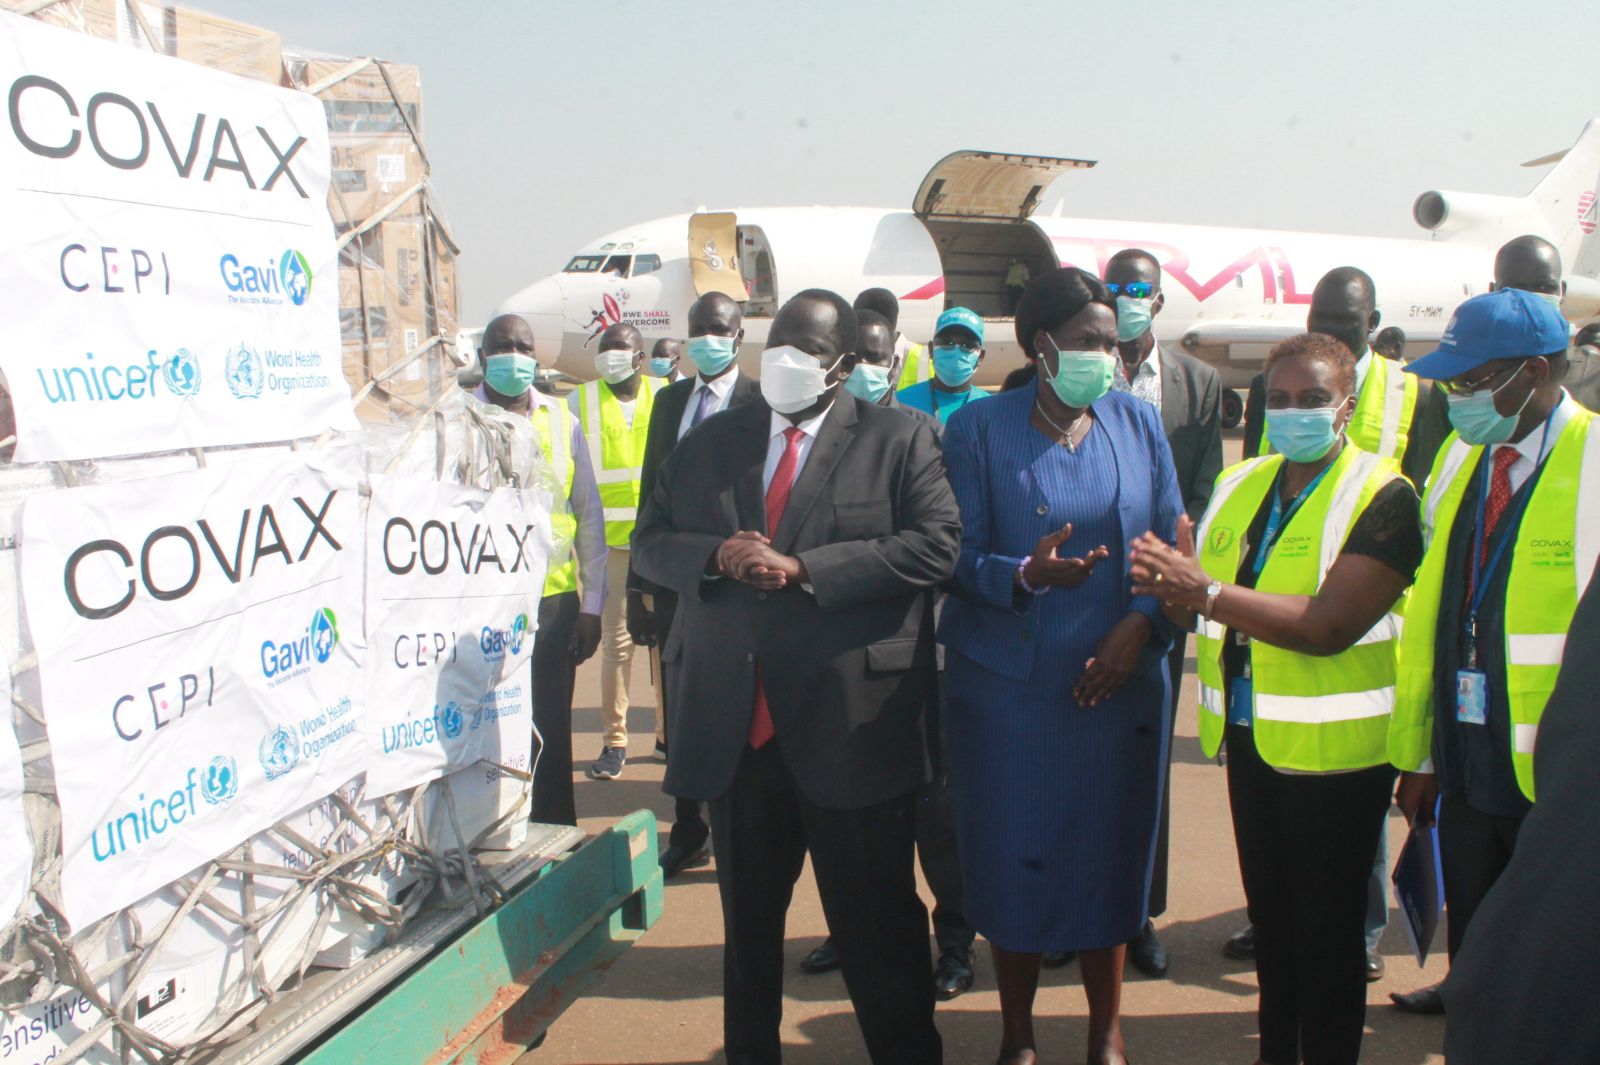 Lieferung von  Covid-19-Impfdosen in den Südsudan im März 2021 durch die COVAX-Initiative – laut Experten liefert COVAX  weltweit viel zu wenig Impfstoffe.